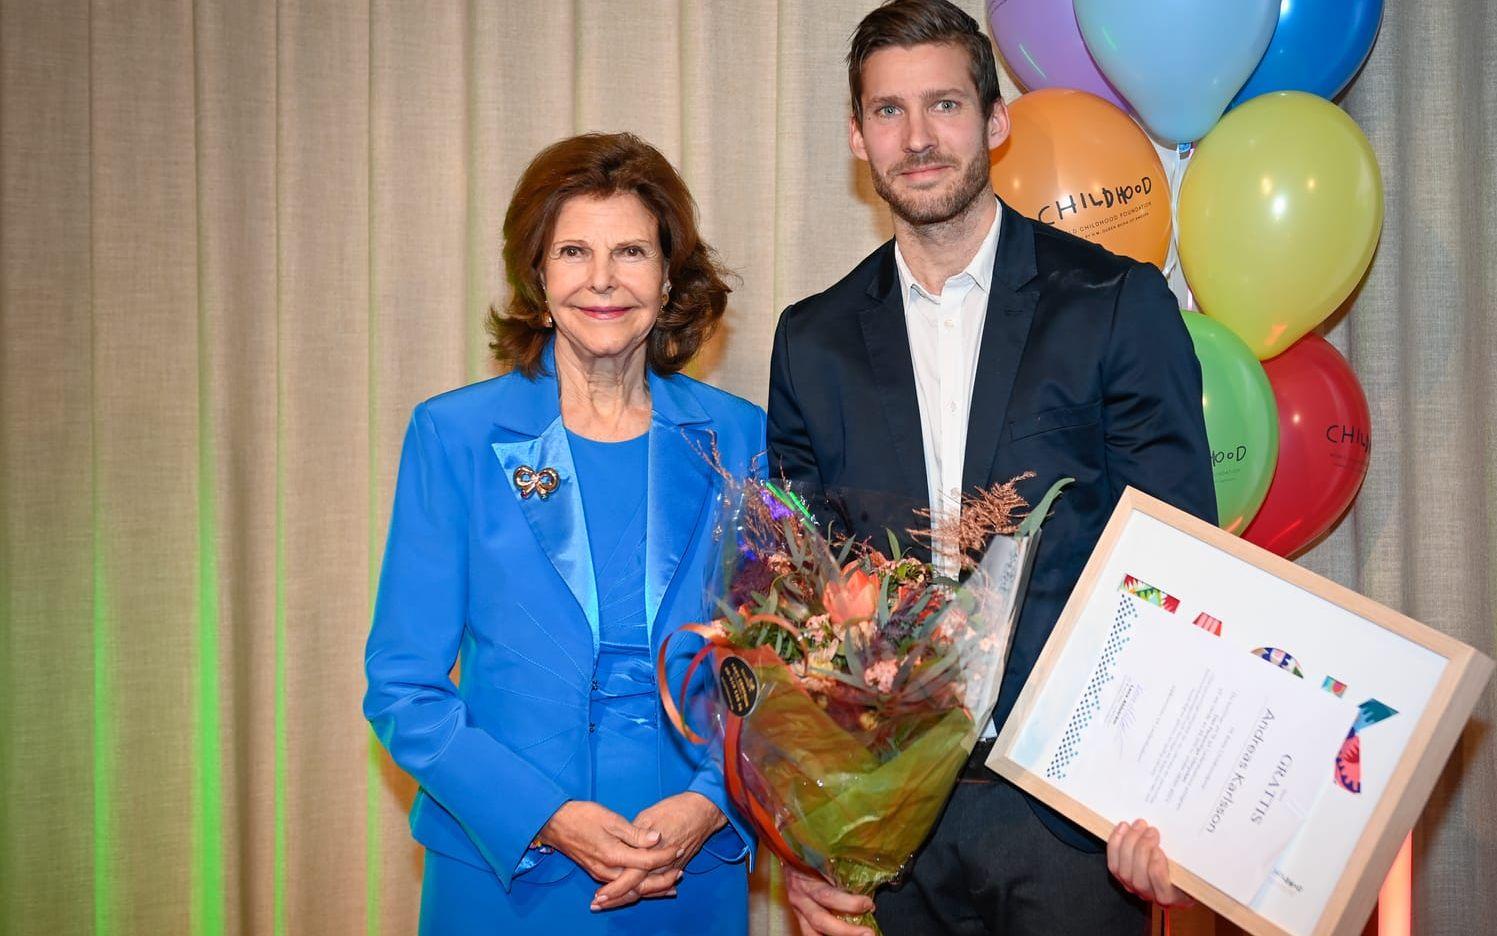 Drottning Silvia och Andreas Carlson, fritidsledare på Hellbergsskolan i Sundsvall, som tog emot Childhoodpriset vid prisutdelningen den 8 december. Silvia grundade organisationen Childhood 1999. 